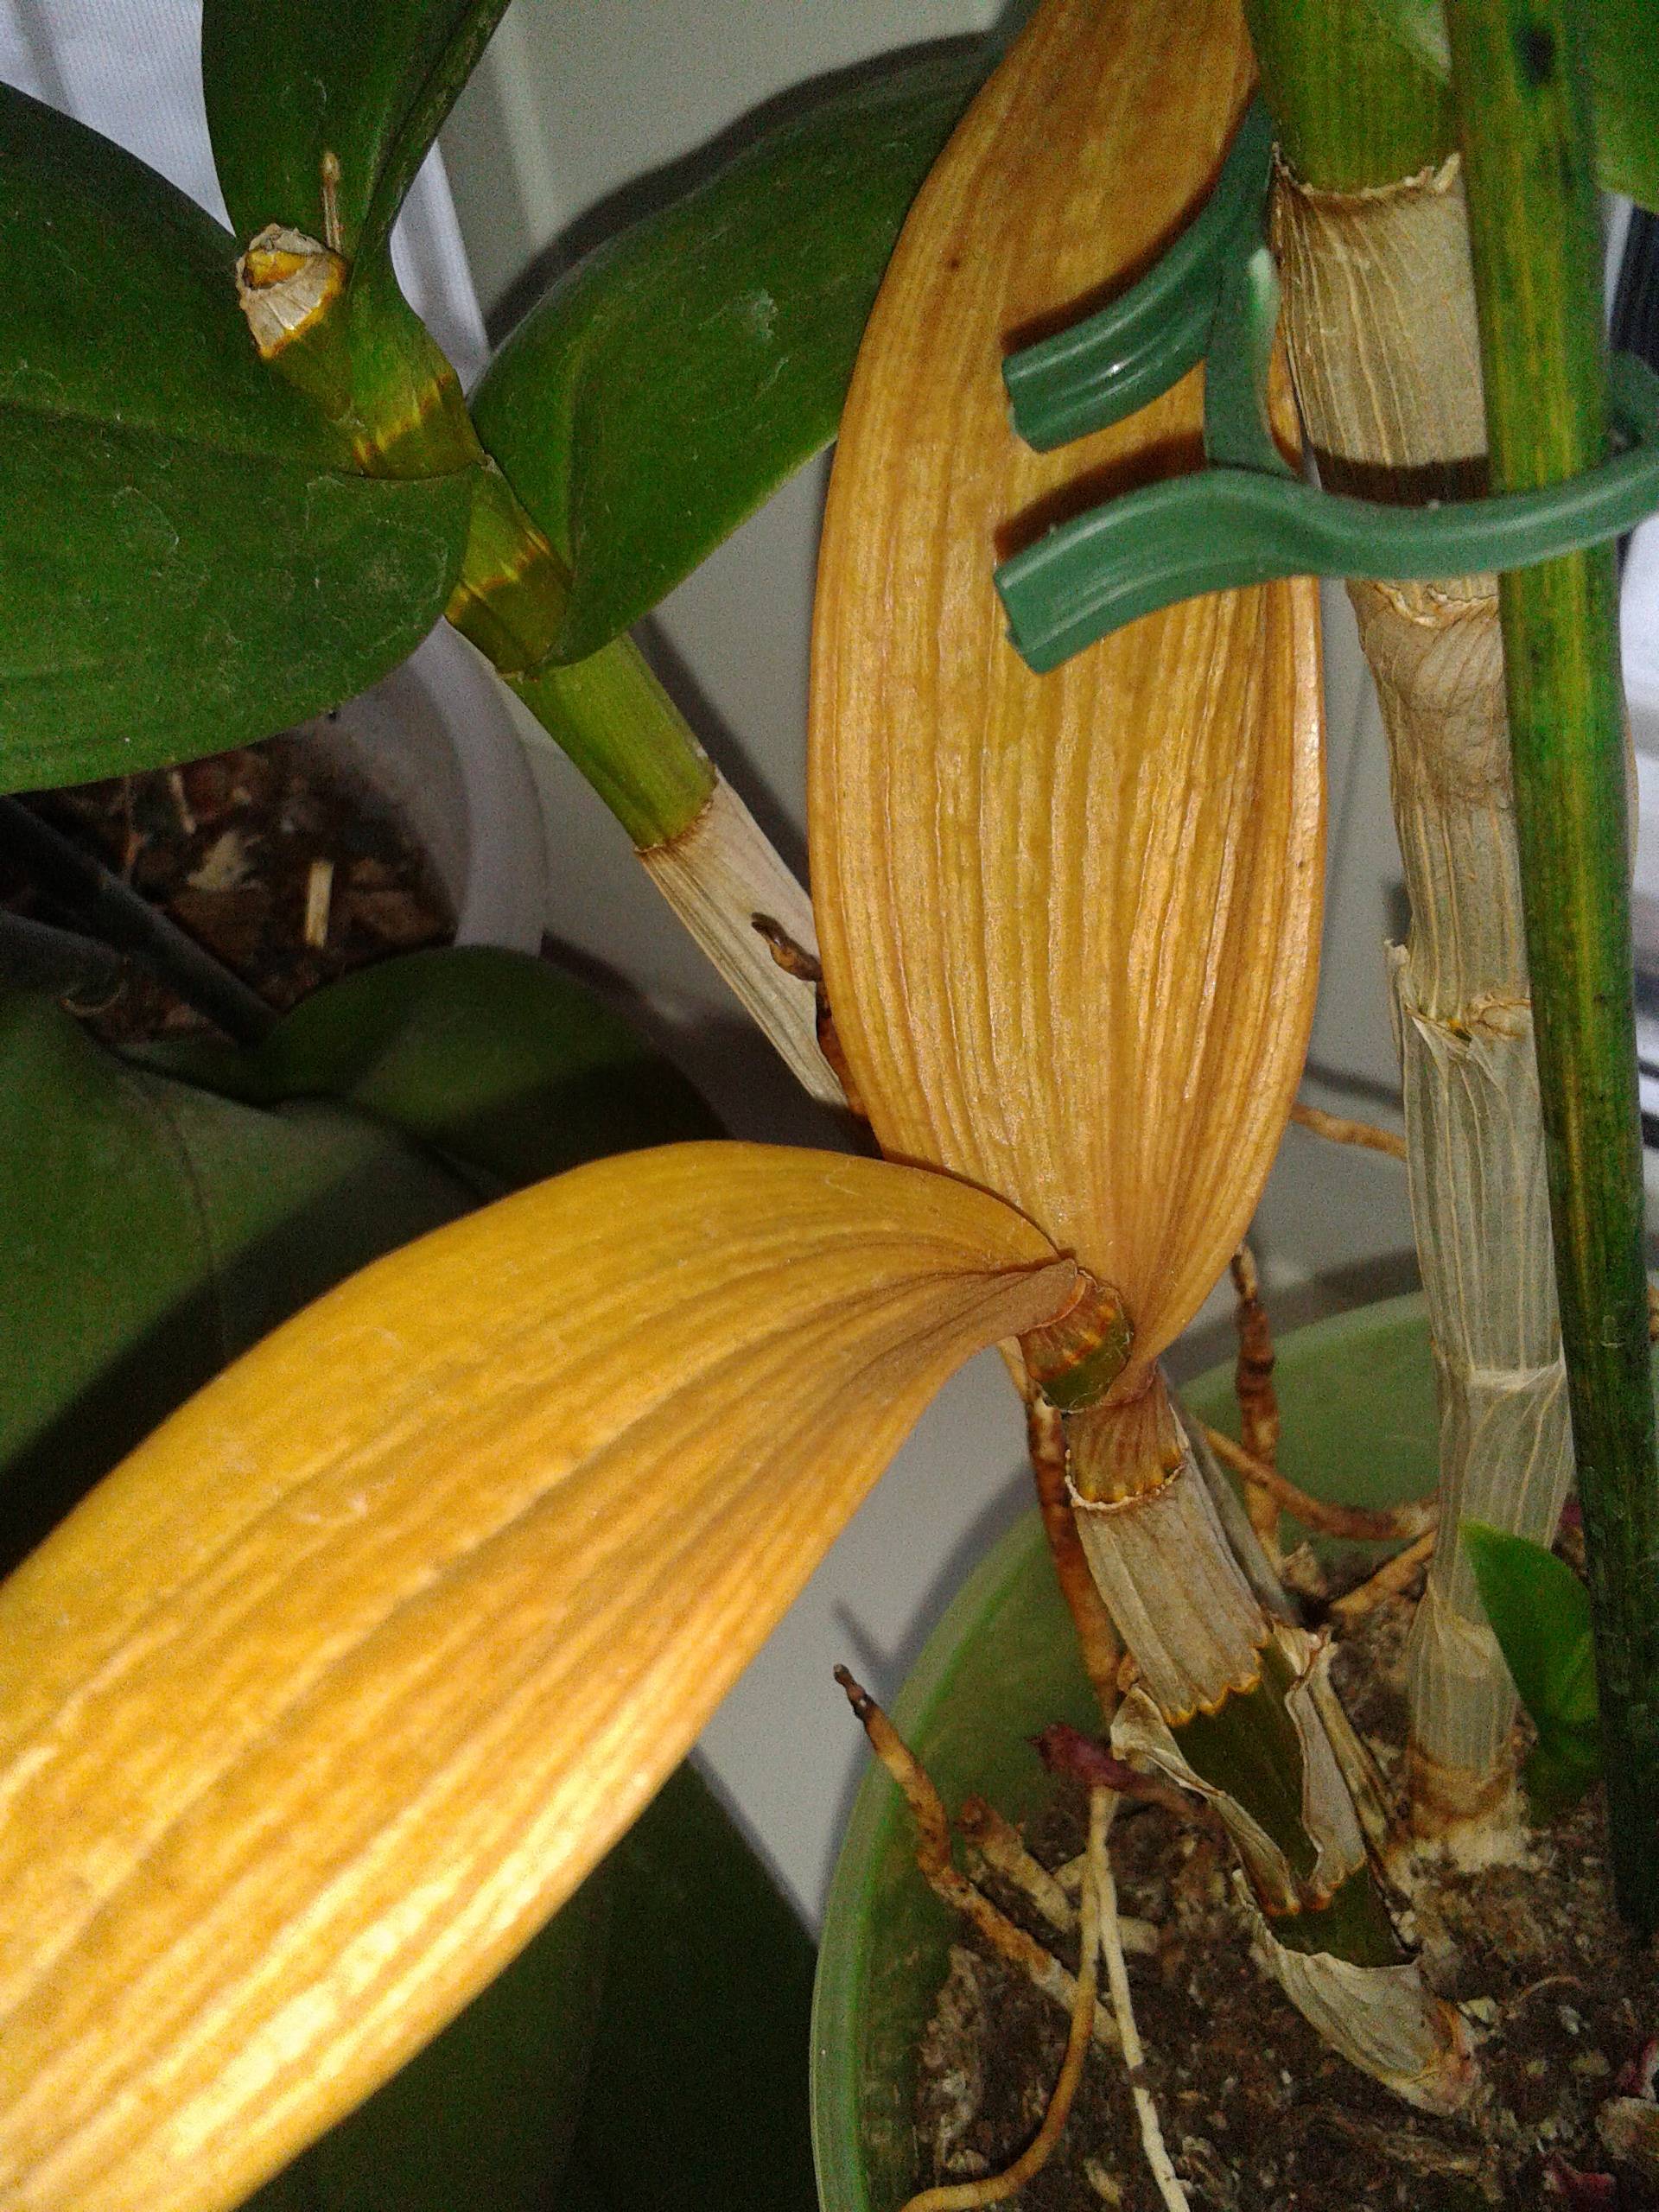 Хобби уральца фаленопсис желтеют листья что делать. почему у орхидеи могут желтеть листья, и что делать в этом случае